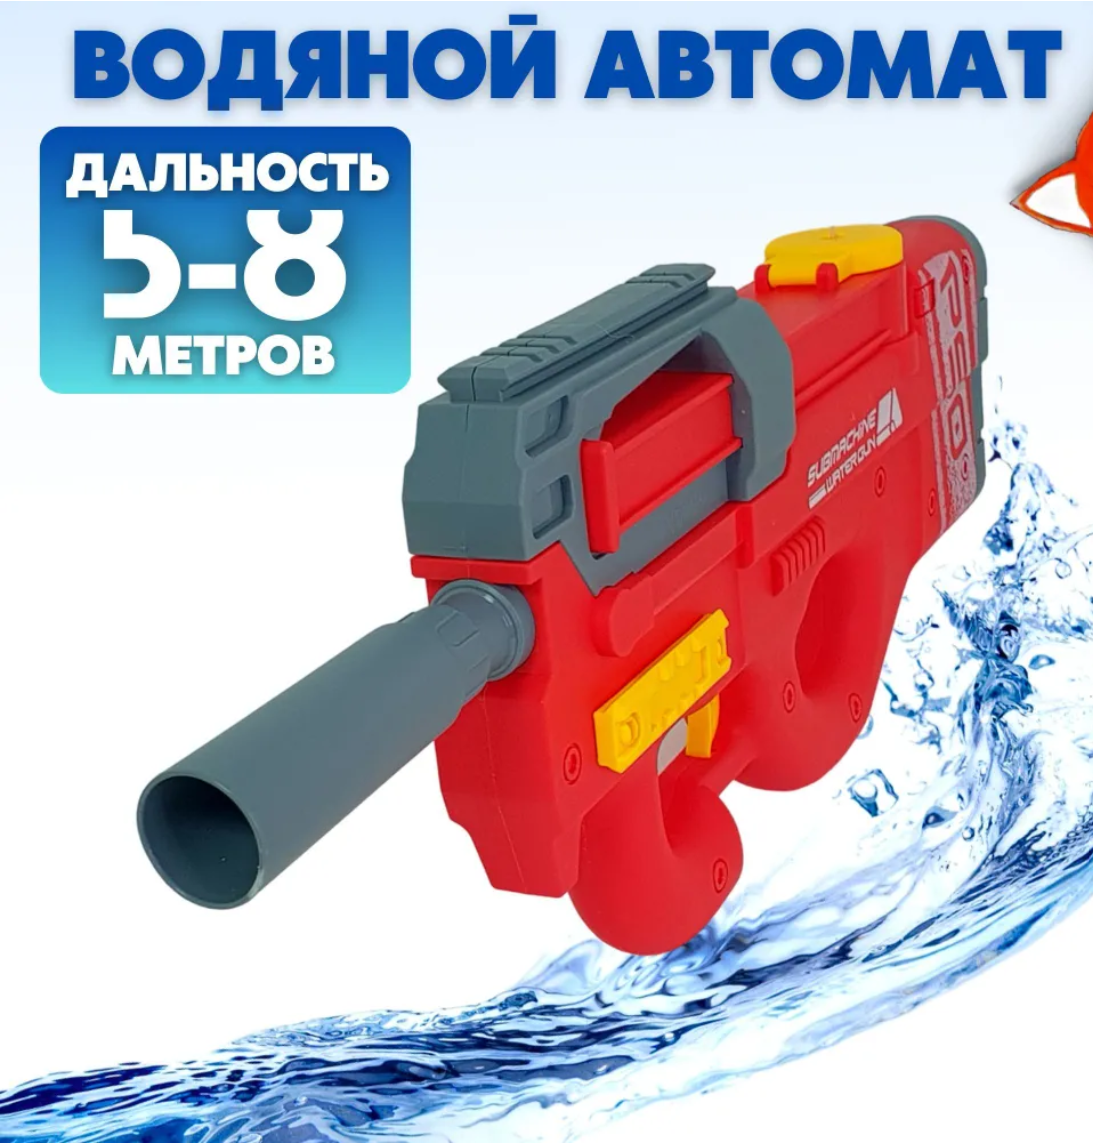 Электрический водяной автомат P90 water gun